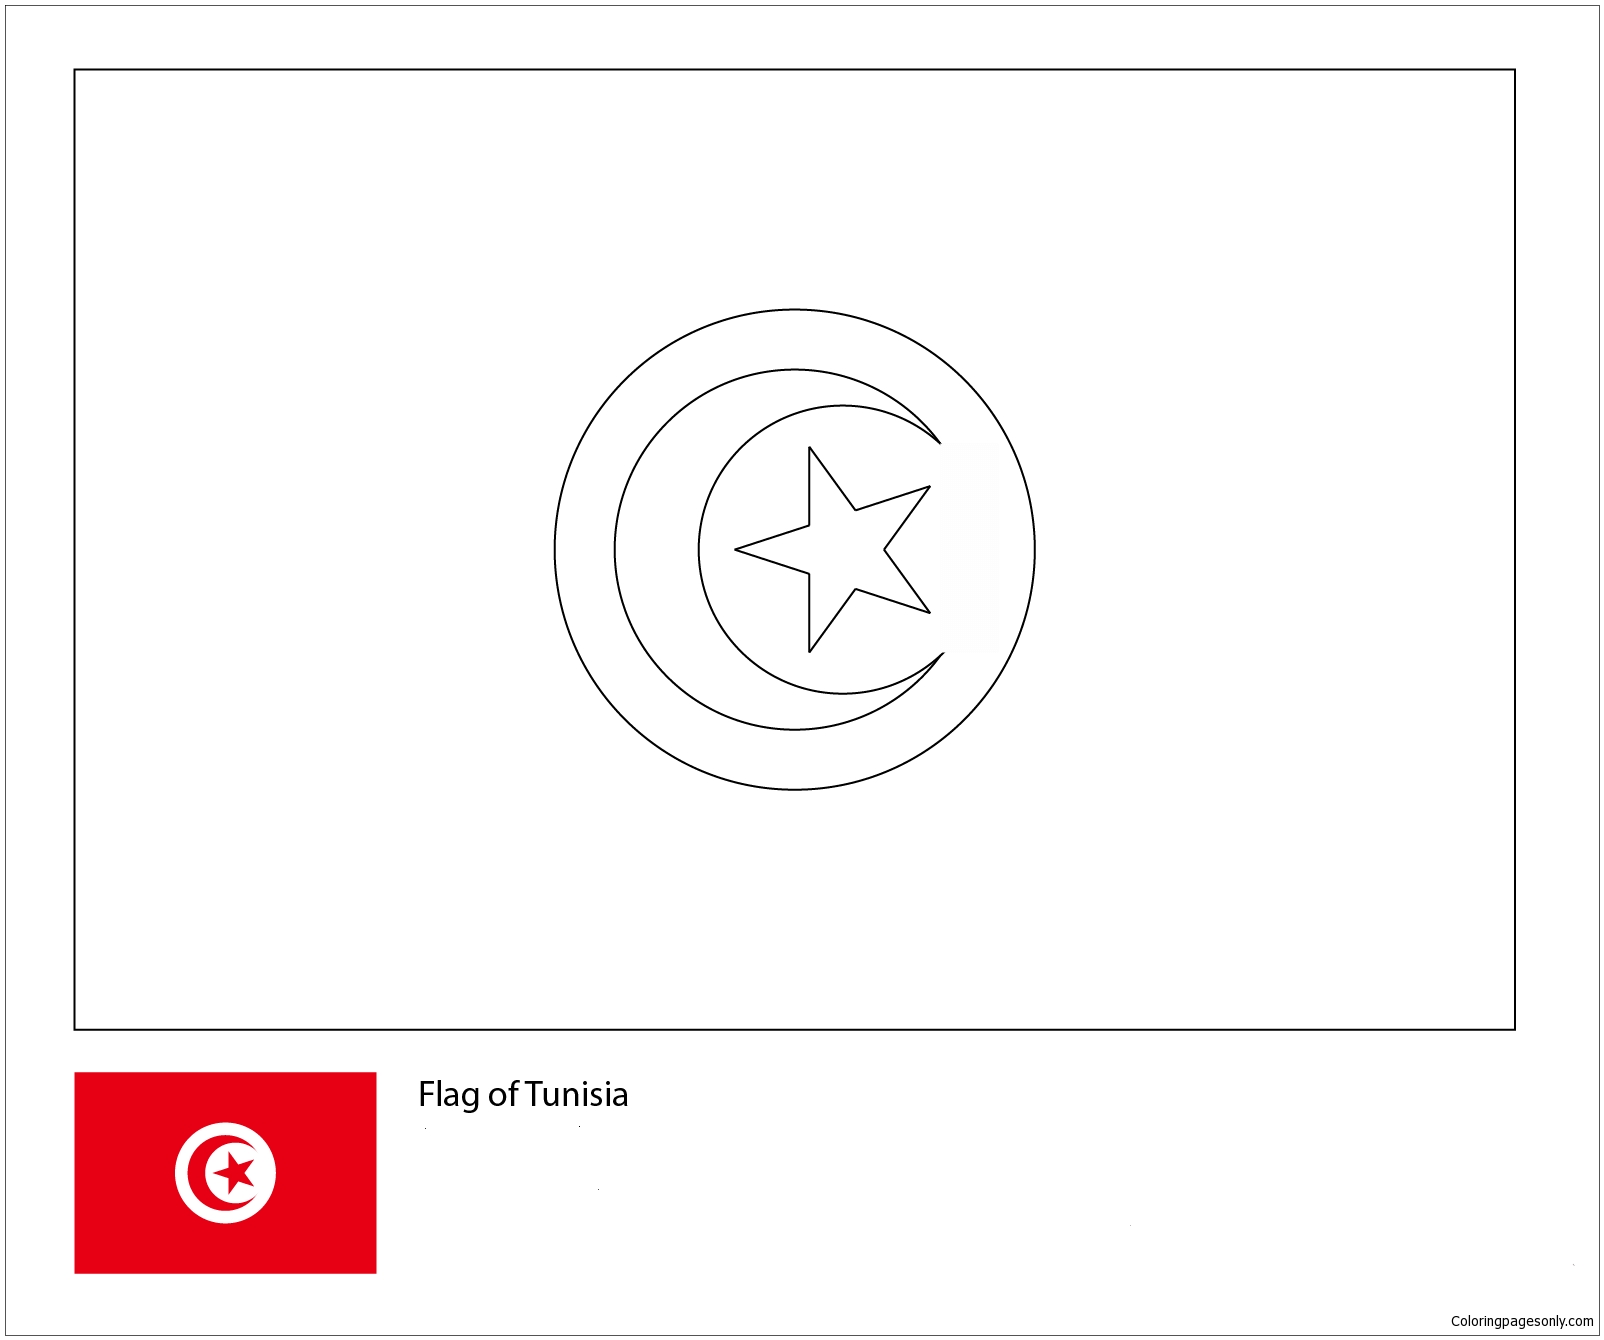 Bandiera della Tunisia-Coppa del Mondo 2018 dalle Bandiere della Coppa del Mondo 2018